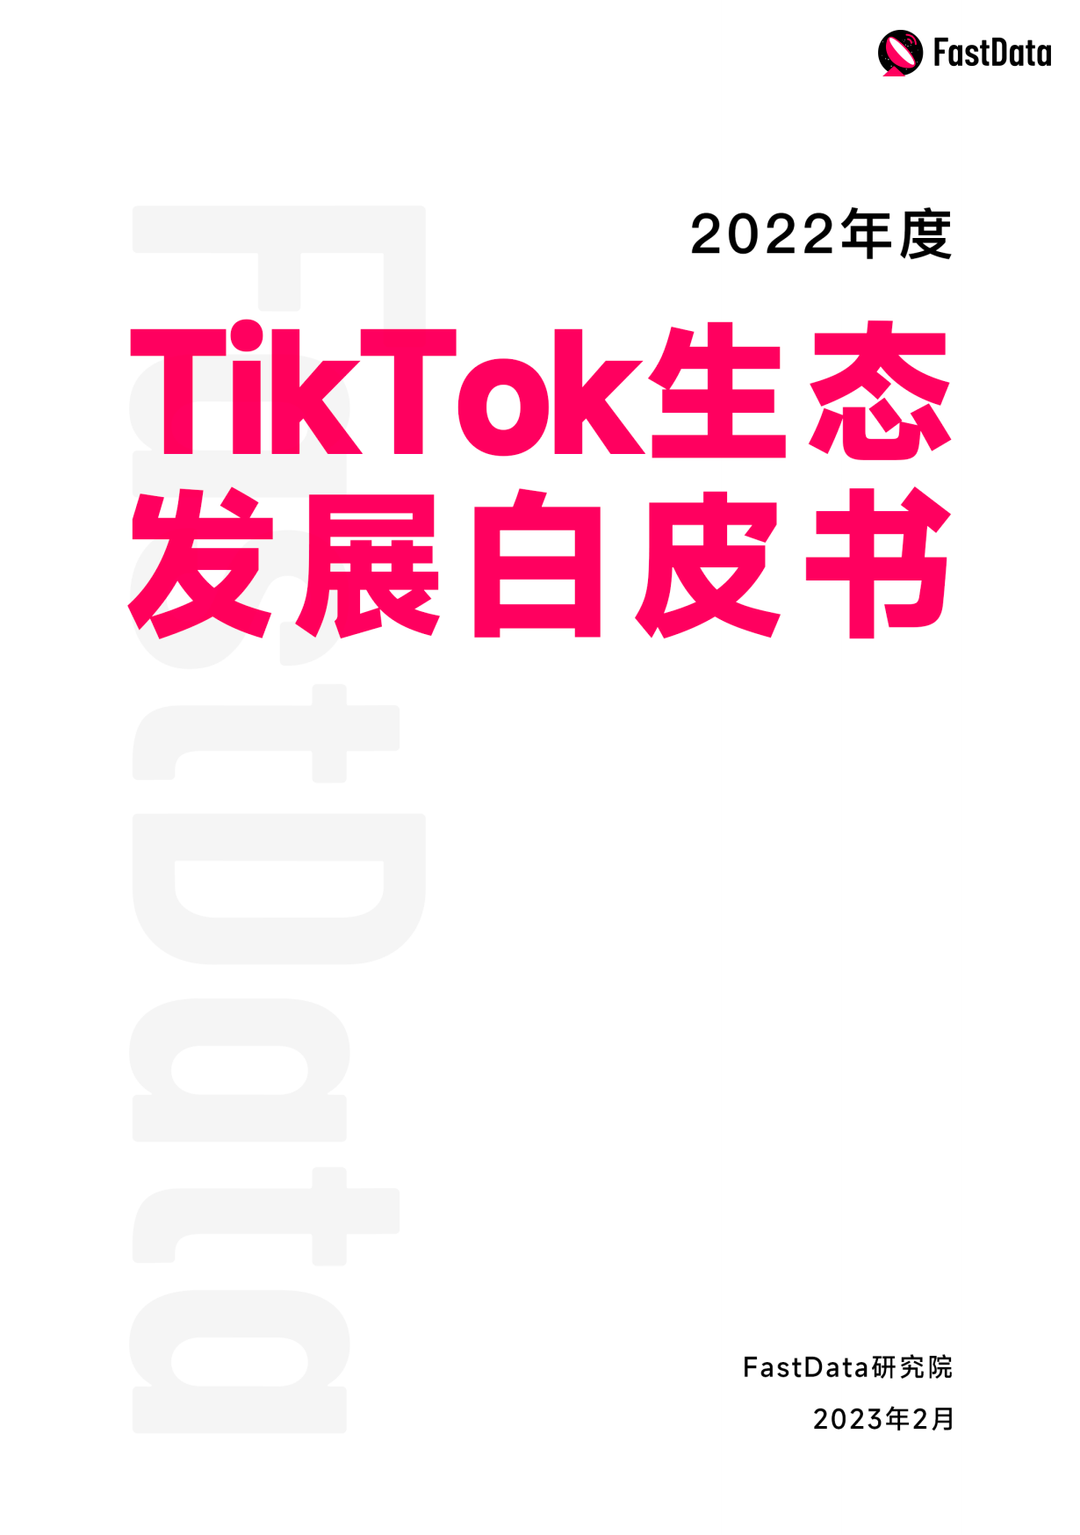 FastData研究院发布《2022年度TikTok生态发展白皮书》